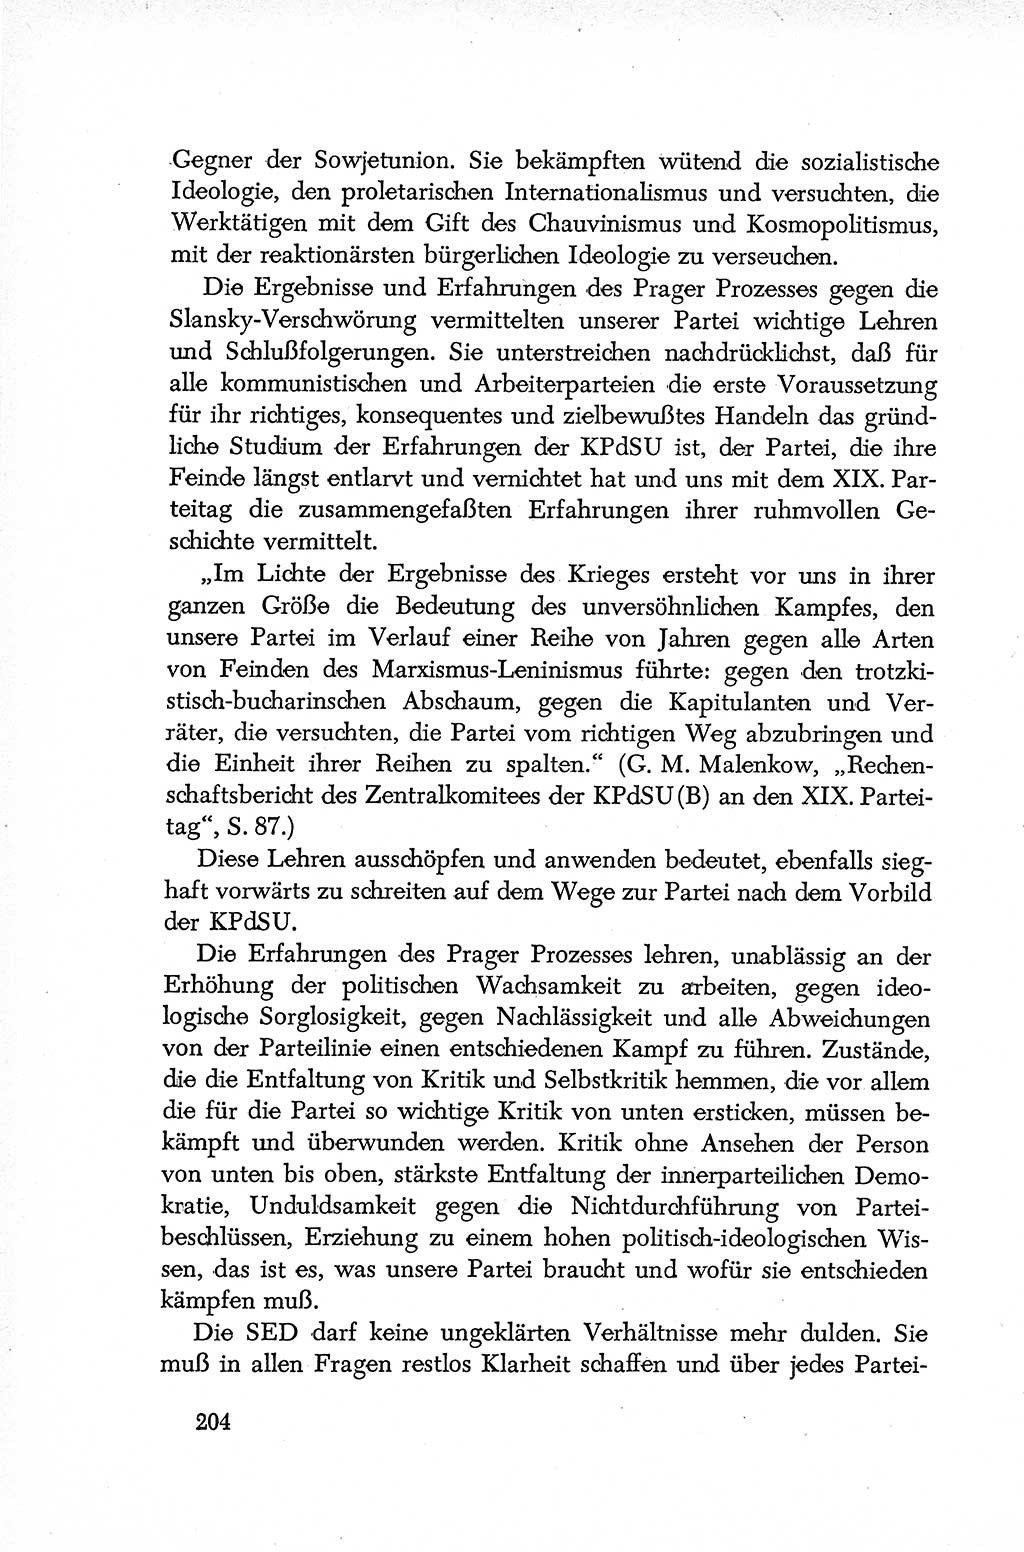 Dokumente der Sozialistischen Einheitspartei Deutschlands (SED) [Deutsche Demokratische Republik (DDR)] 1952-1953, Seite 204 (Dok. SED DDR 1952-1953, S. 204)